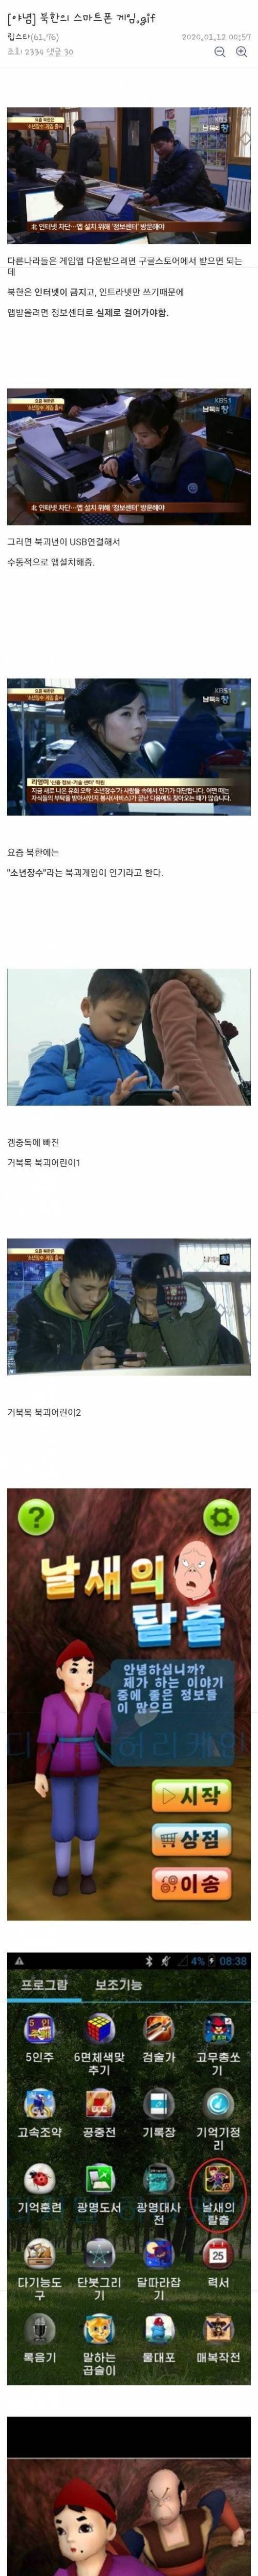 [스압] 북한의 스마트폰 게임